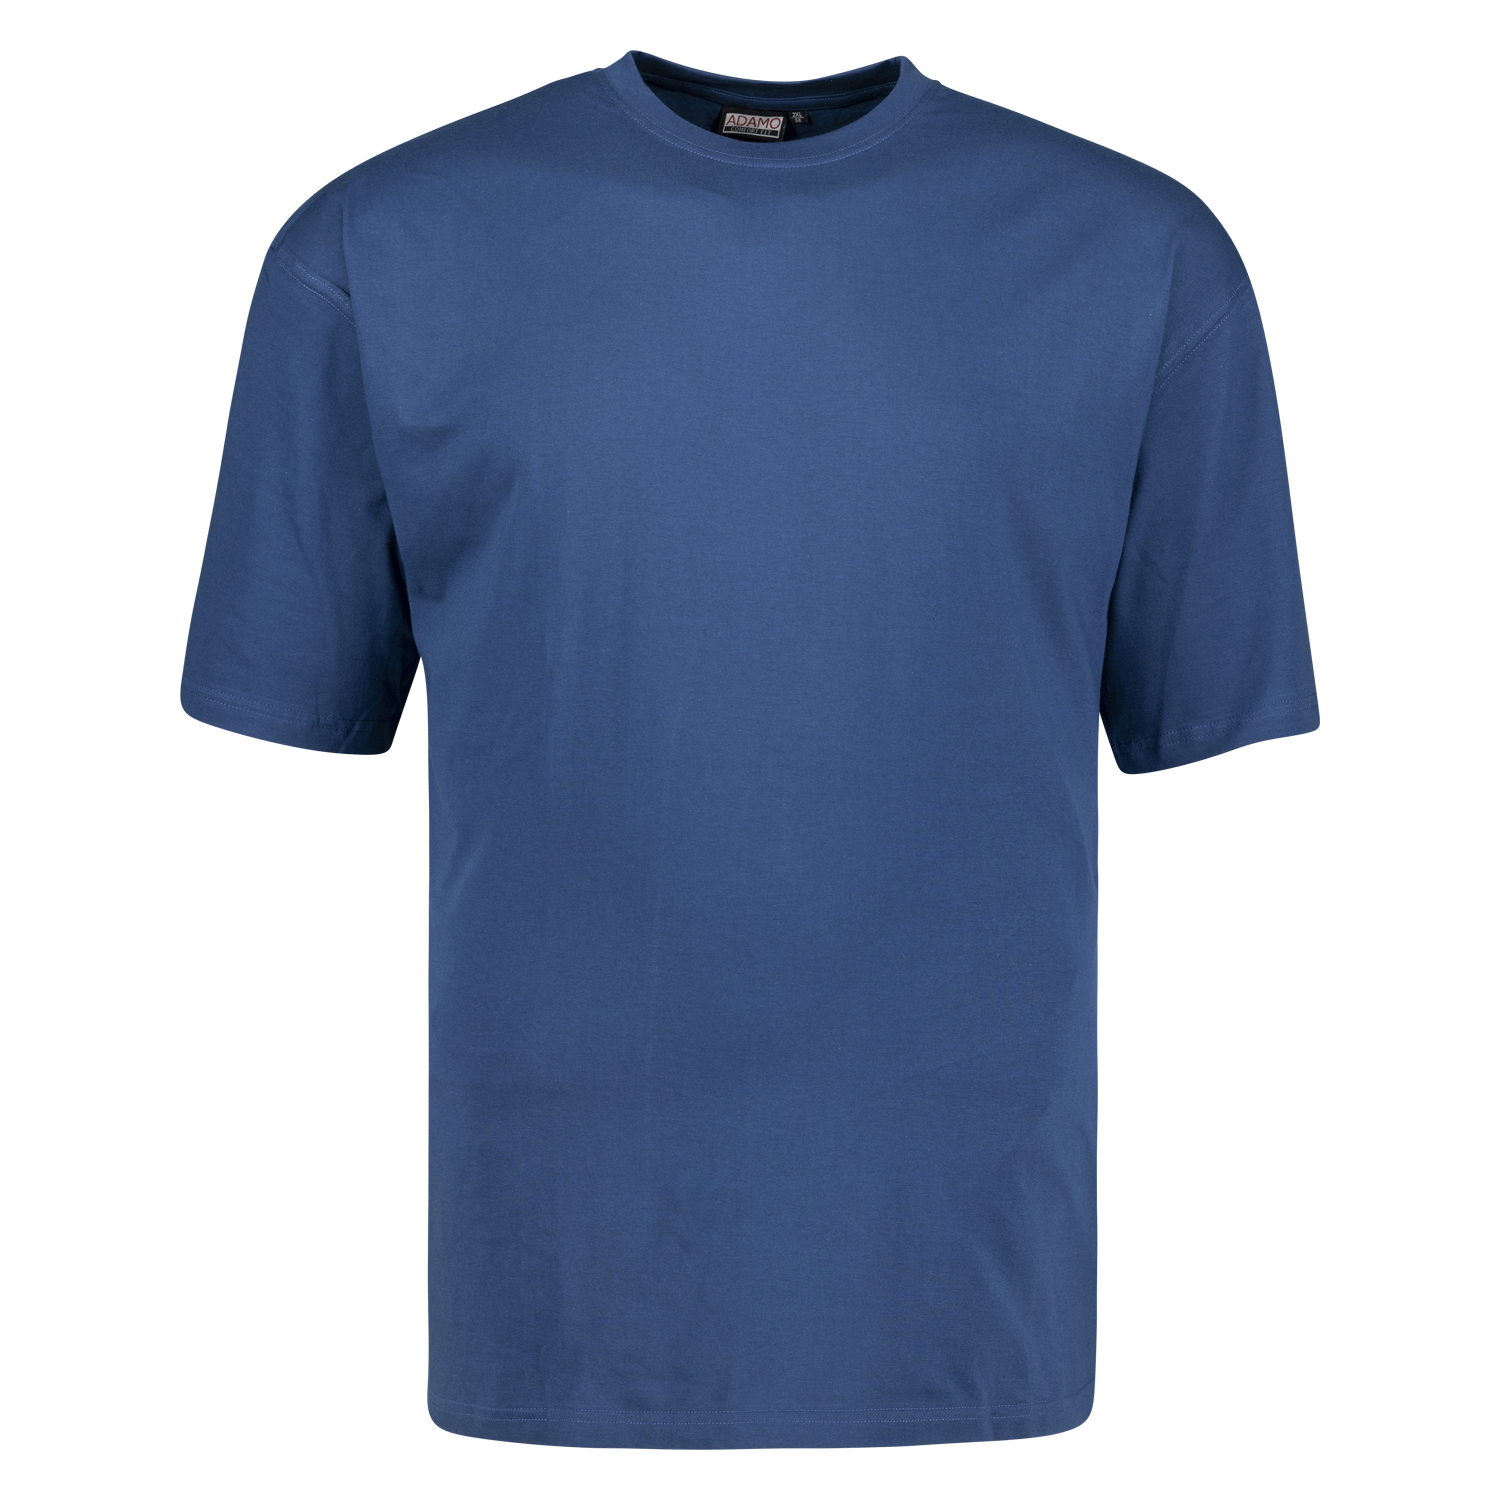 T-shirt en bleu jeans avec col rond Tall Fit extra long série Magic by Adamo en longues tailles jusqu'au 122